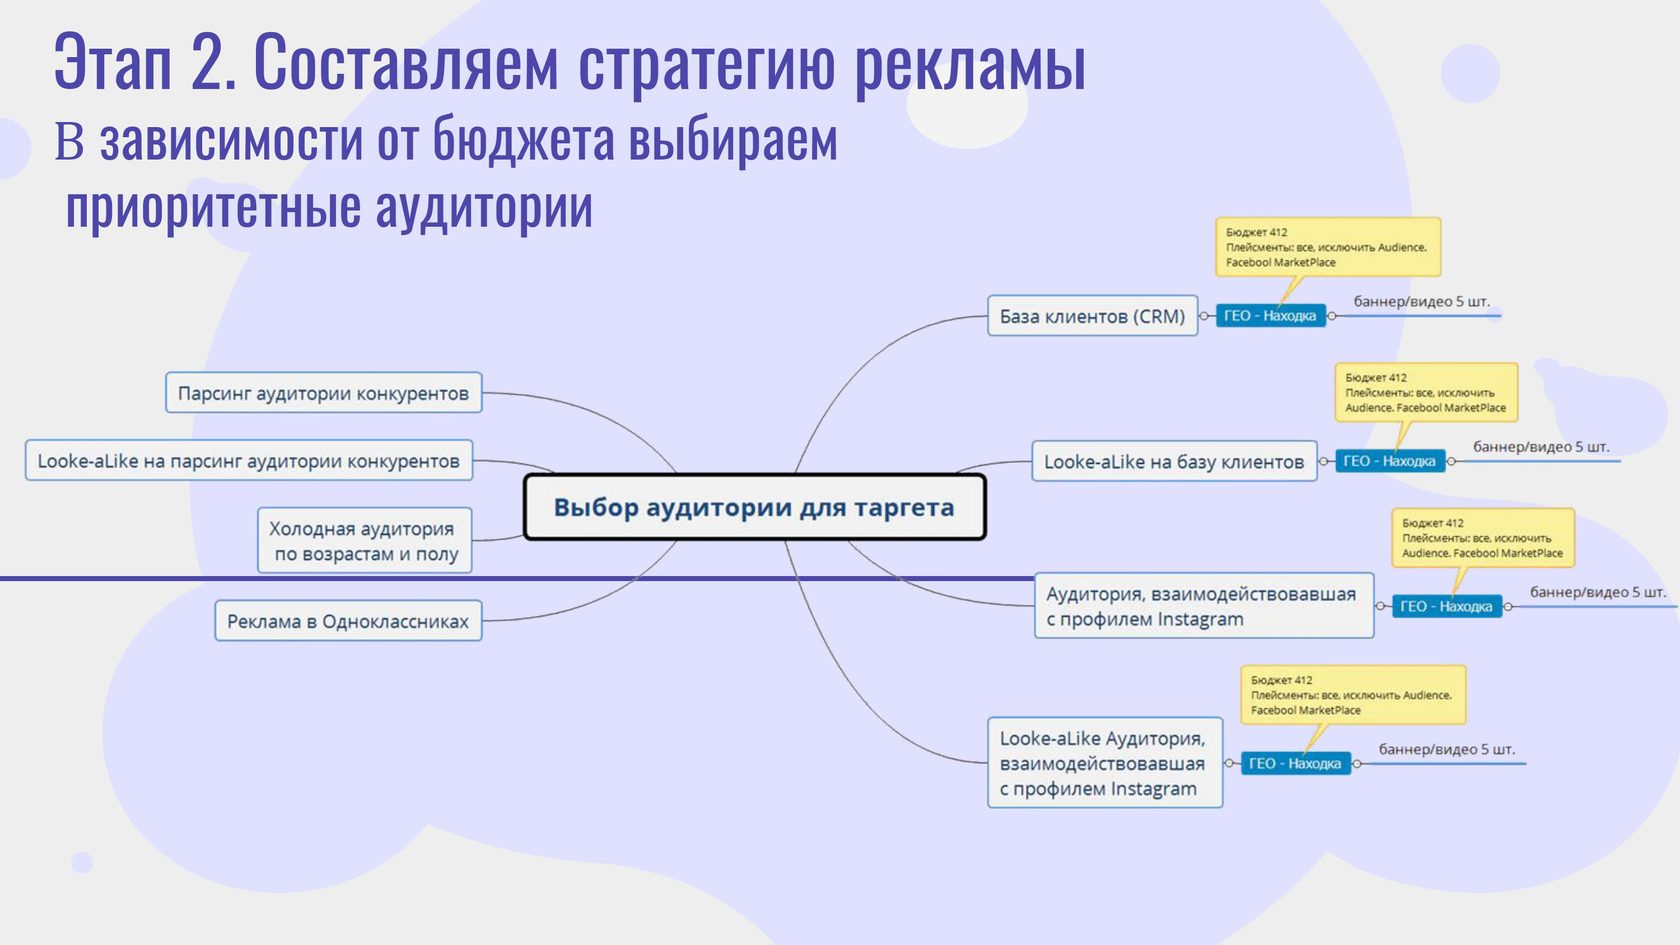 Хочу открыть бизнес в казахстане. сколько потребуется денег? | informburo.kz